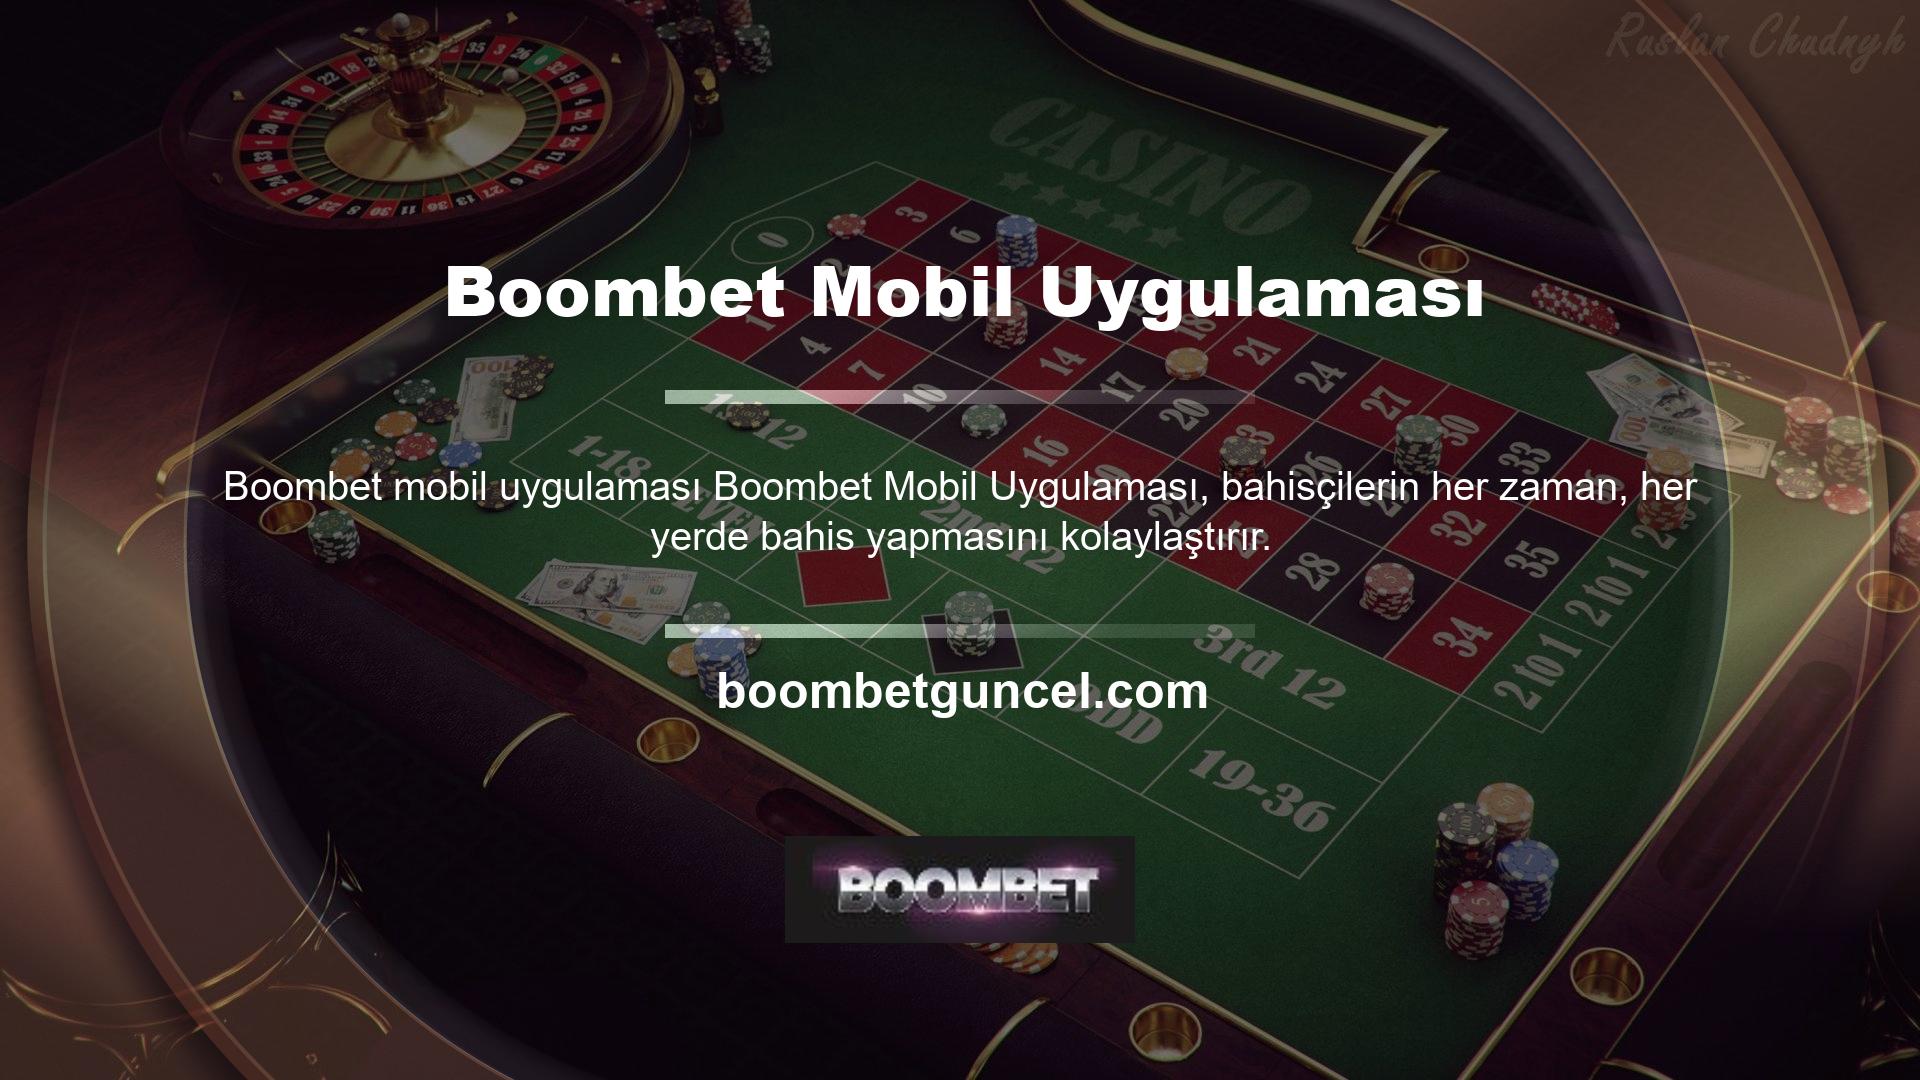 Bahis sitesi URL'si veya sosyal medya bahis sitesi üzerinden Boombet mobil programını indirdikten sonra kullanıcı adı ve şifrenizi kullanarak hemen giriş yapabilirsiniz